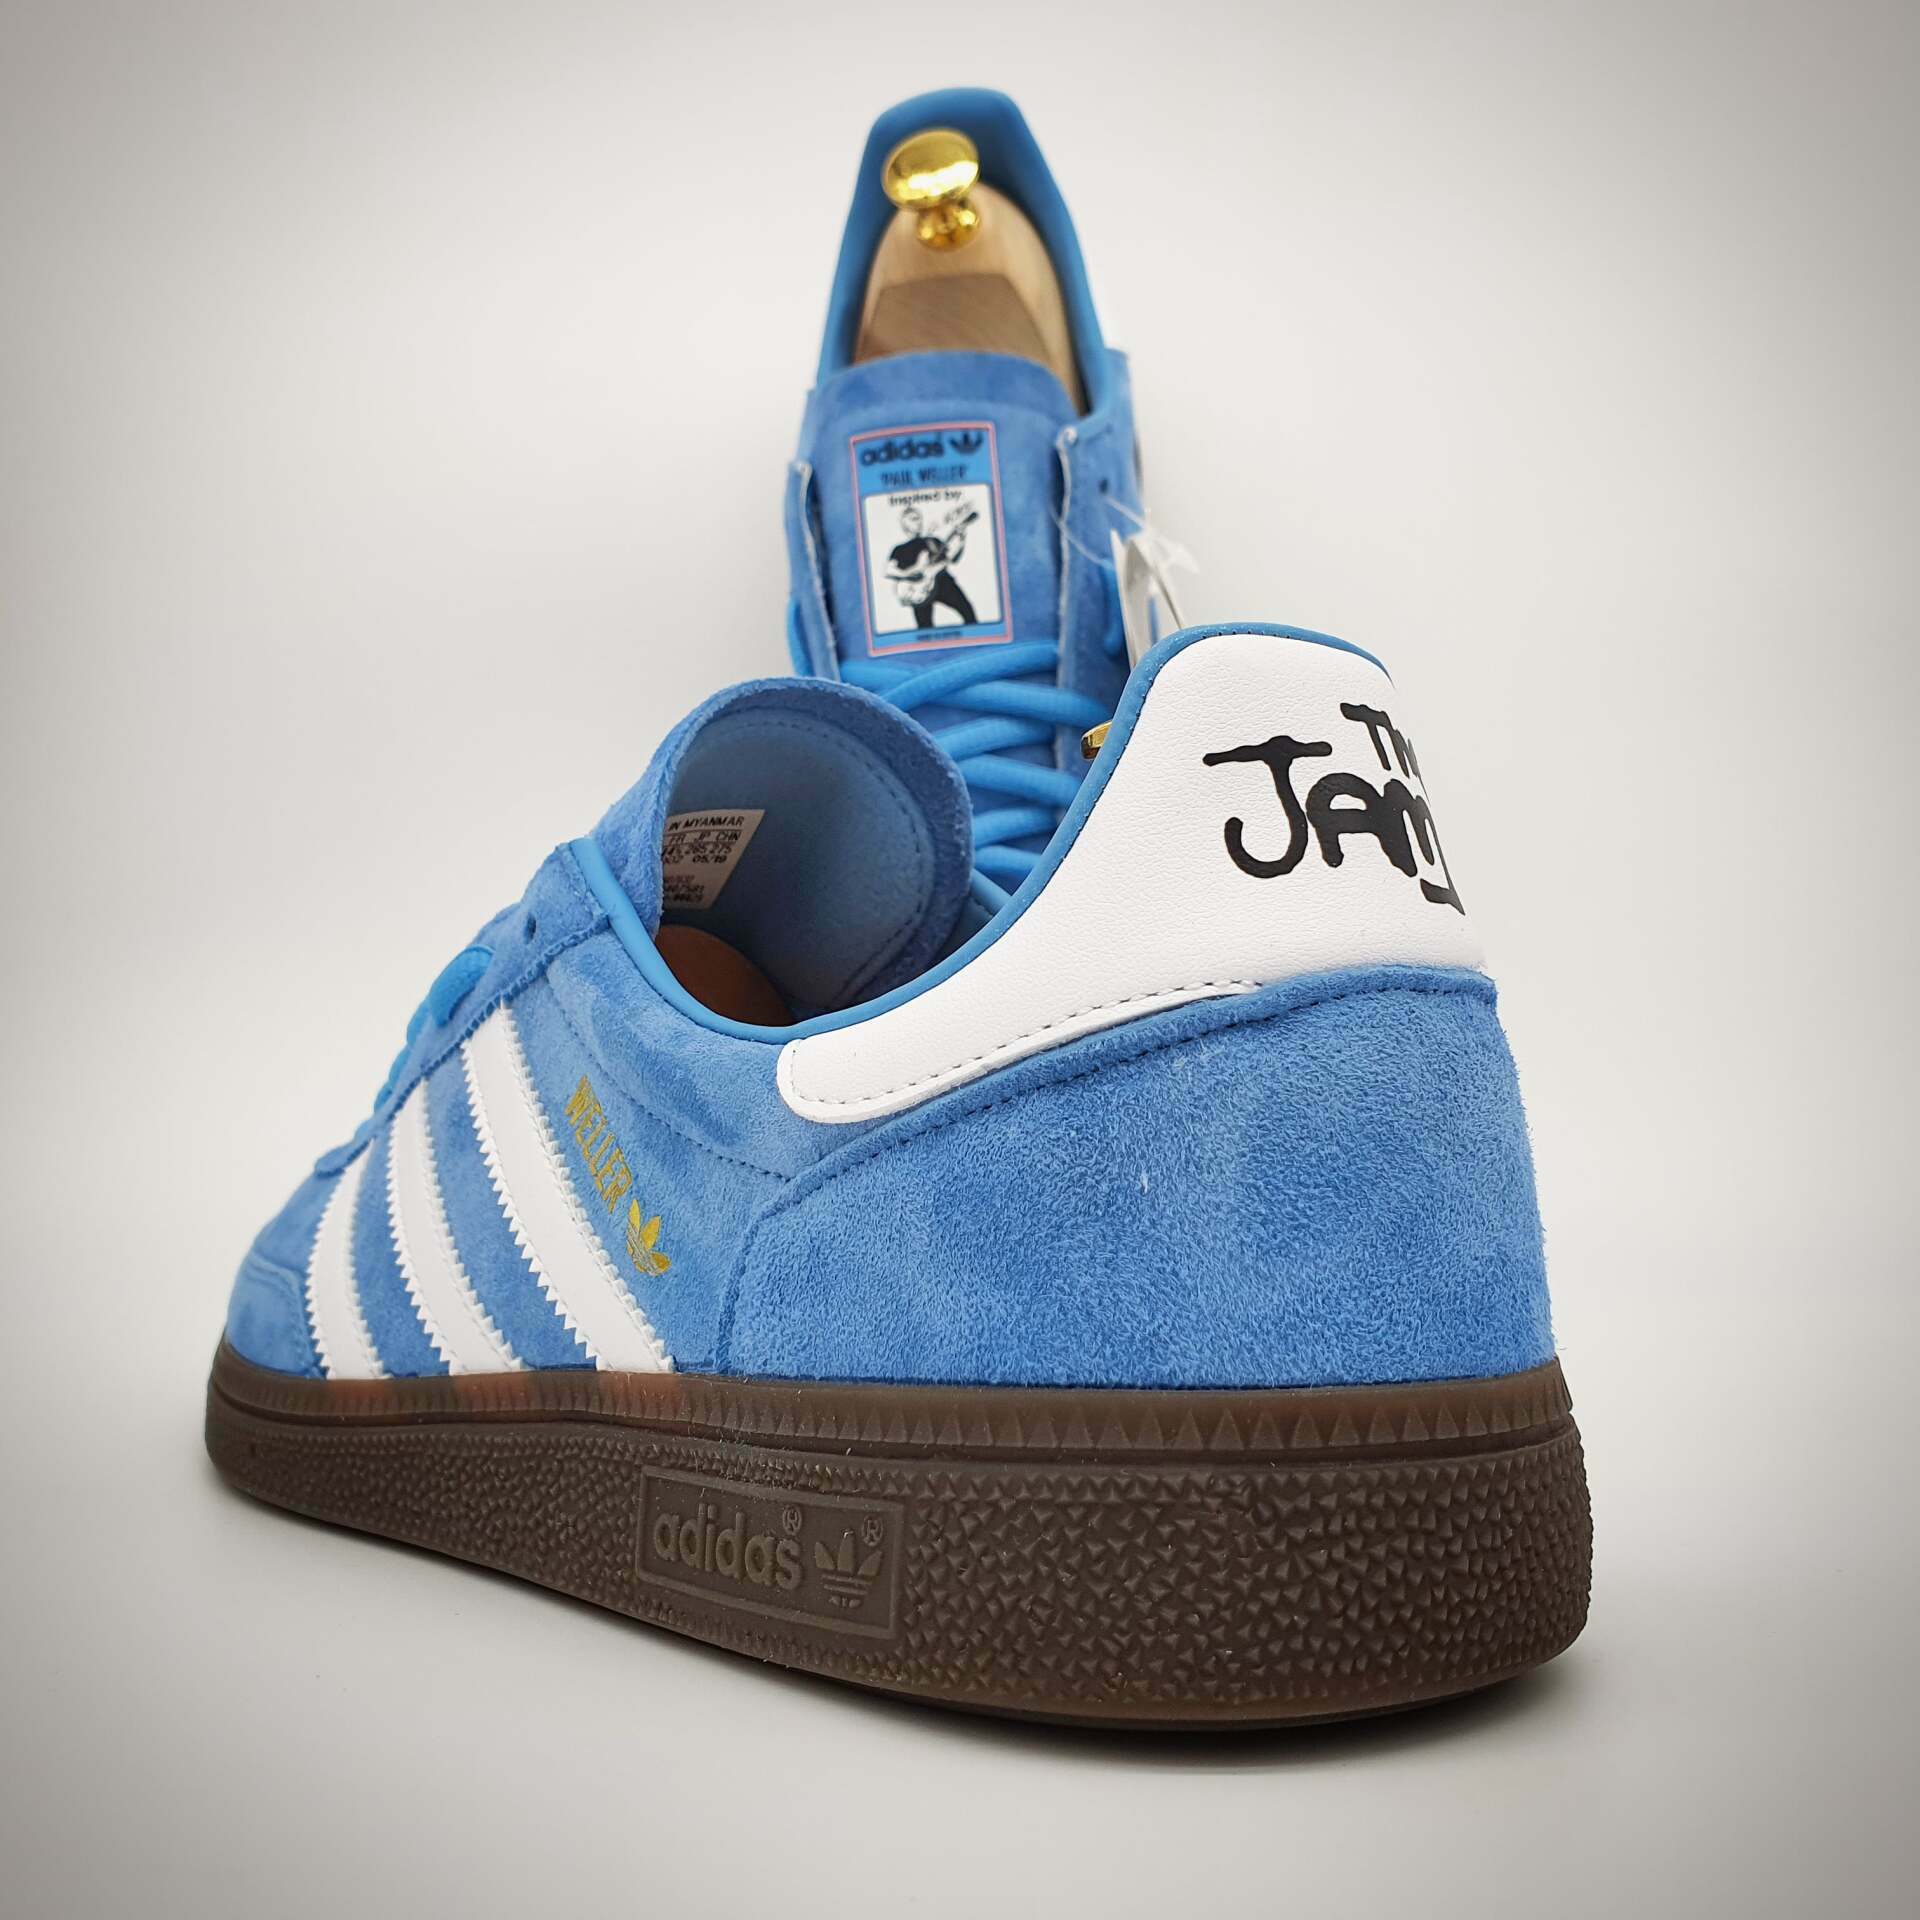 Paul Weller - The Jam - adidas custom